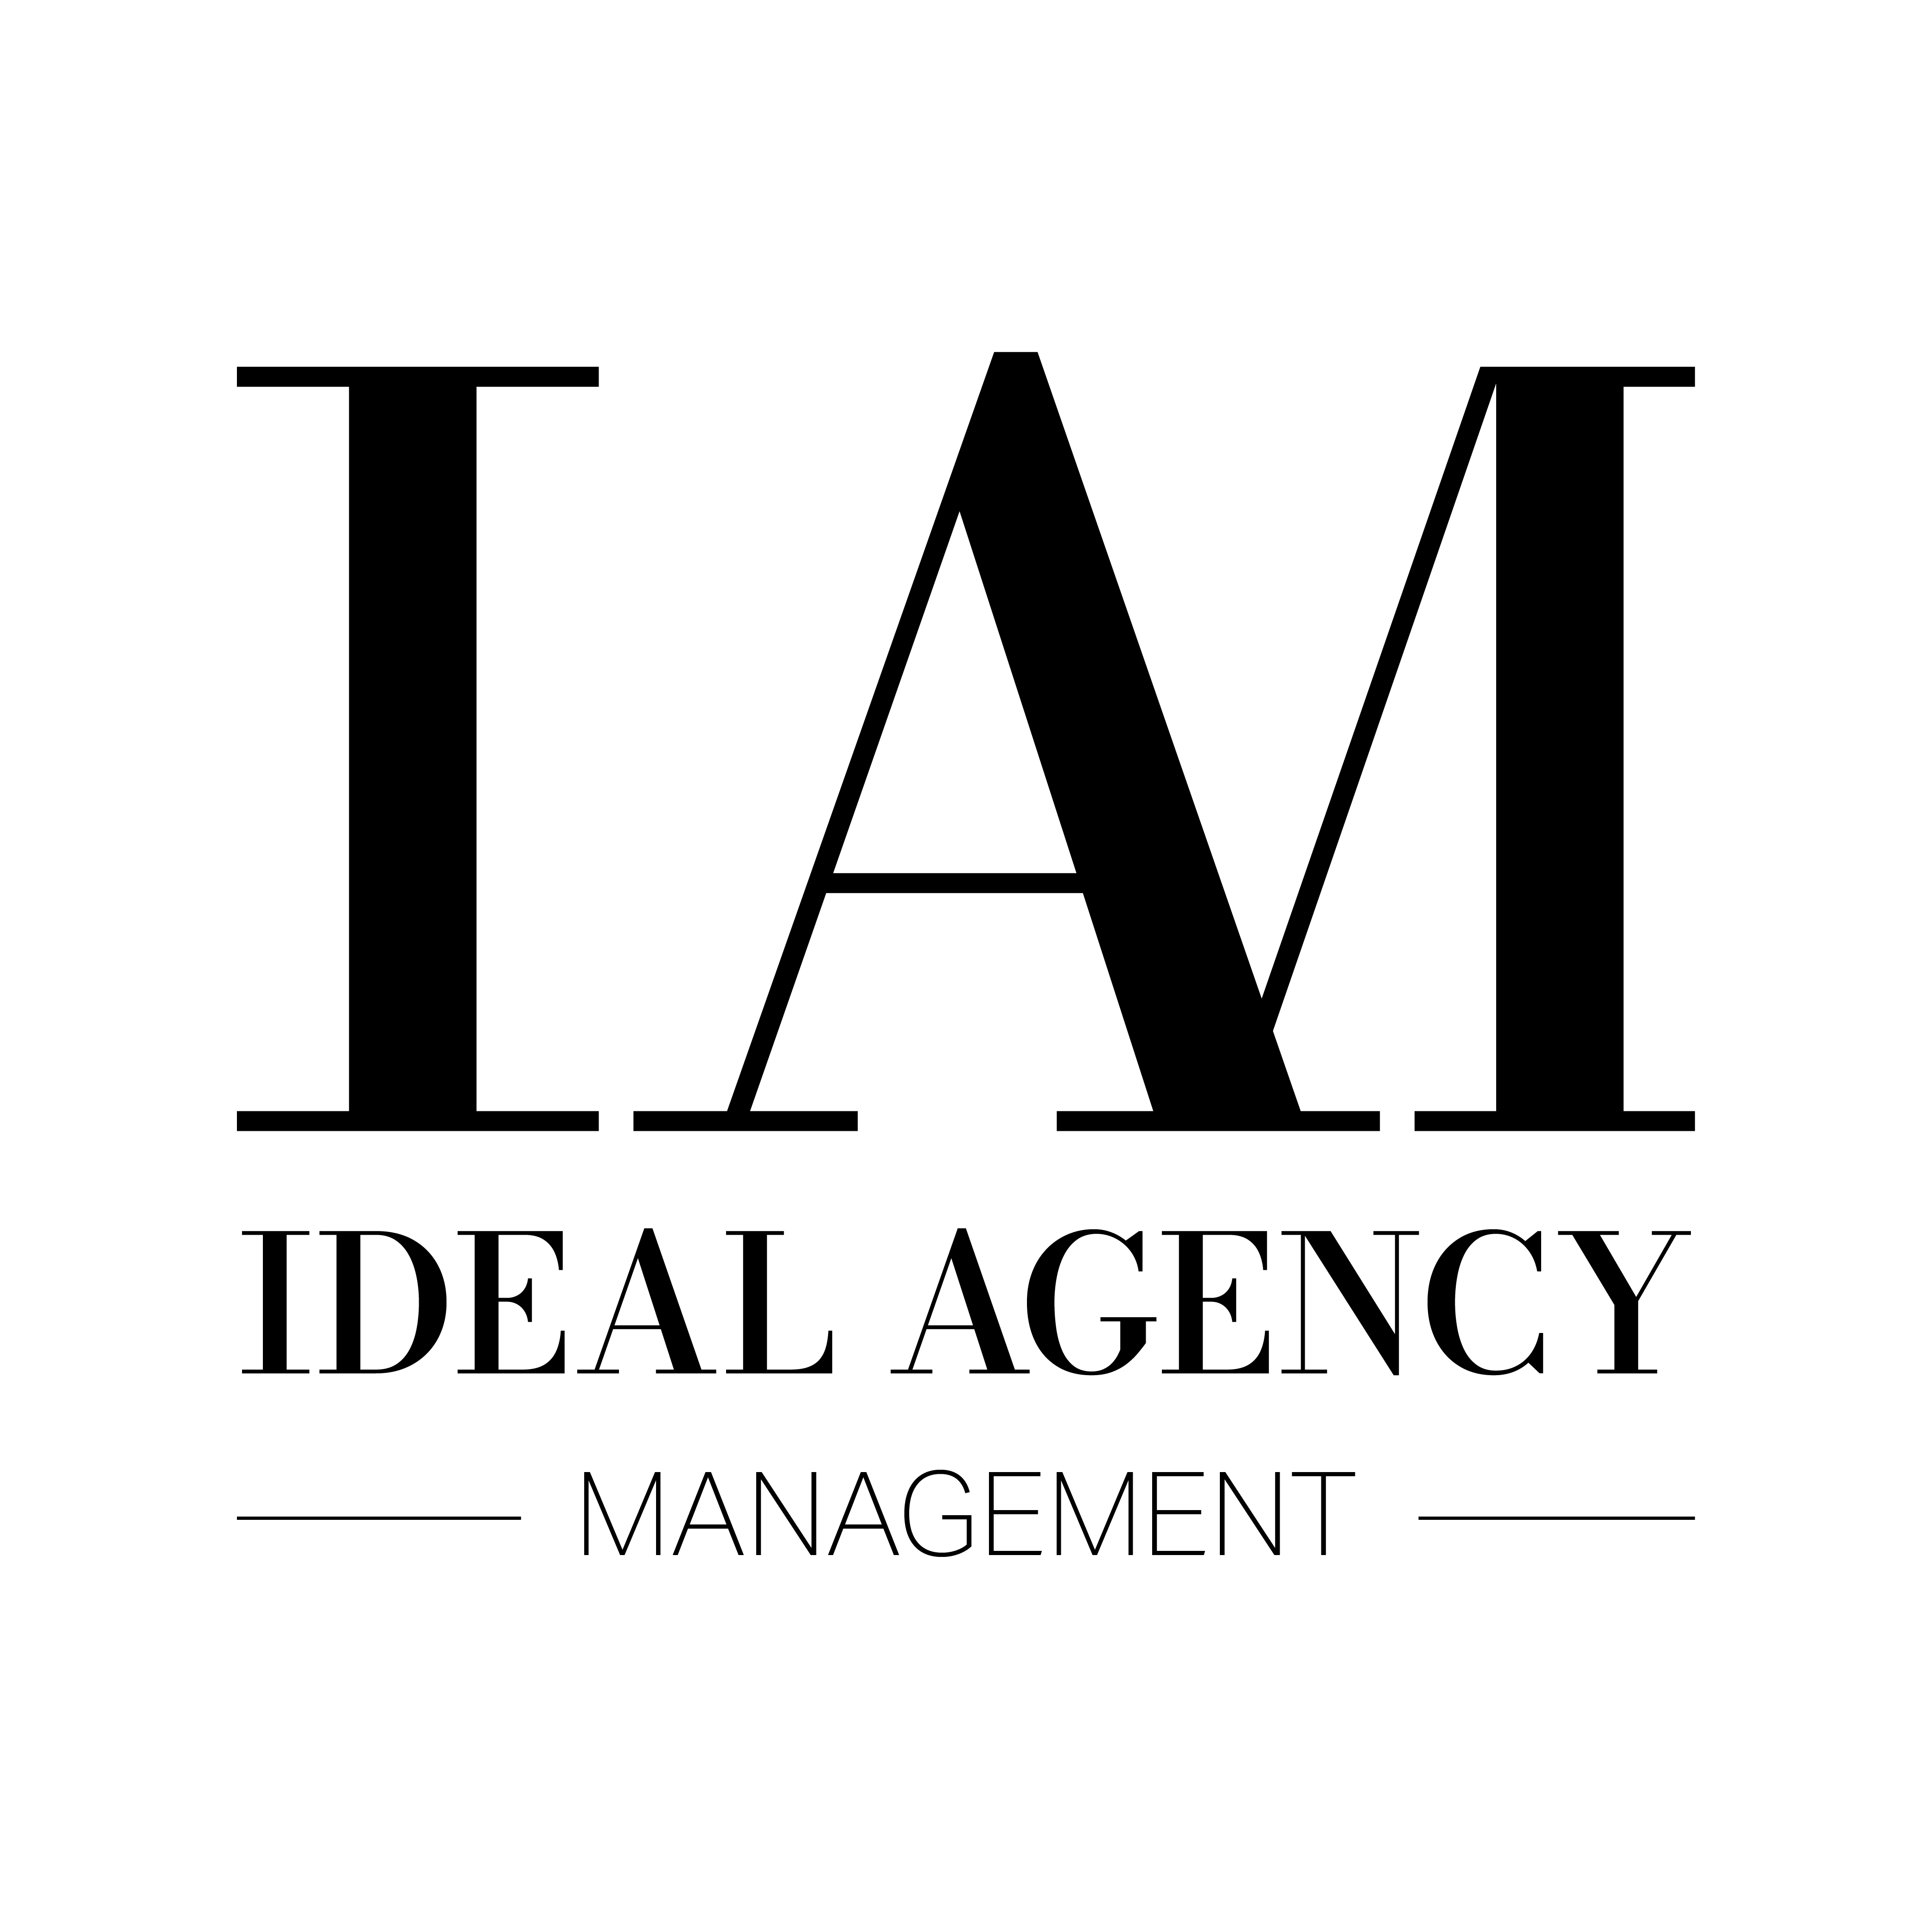 Ideal Agency Management - Mediaslide